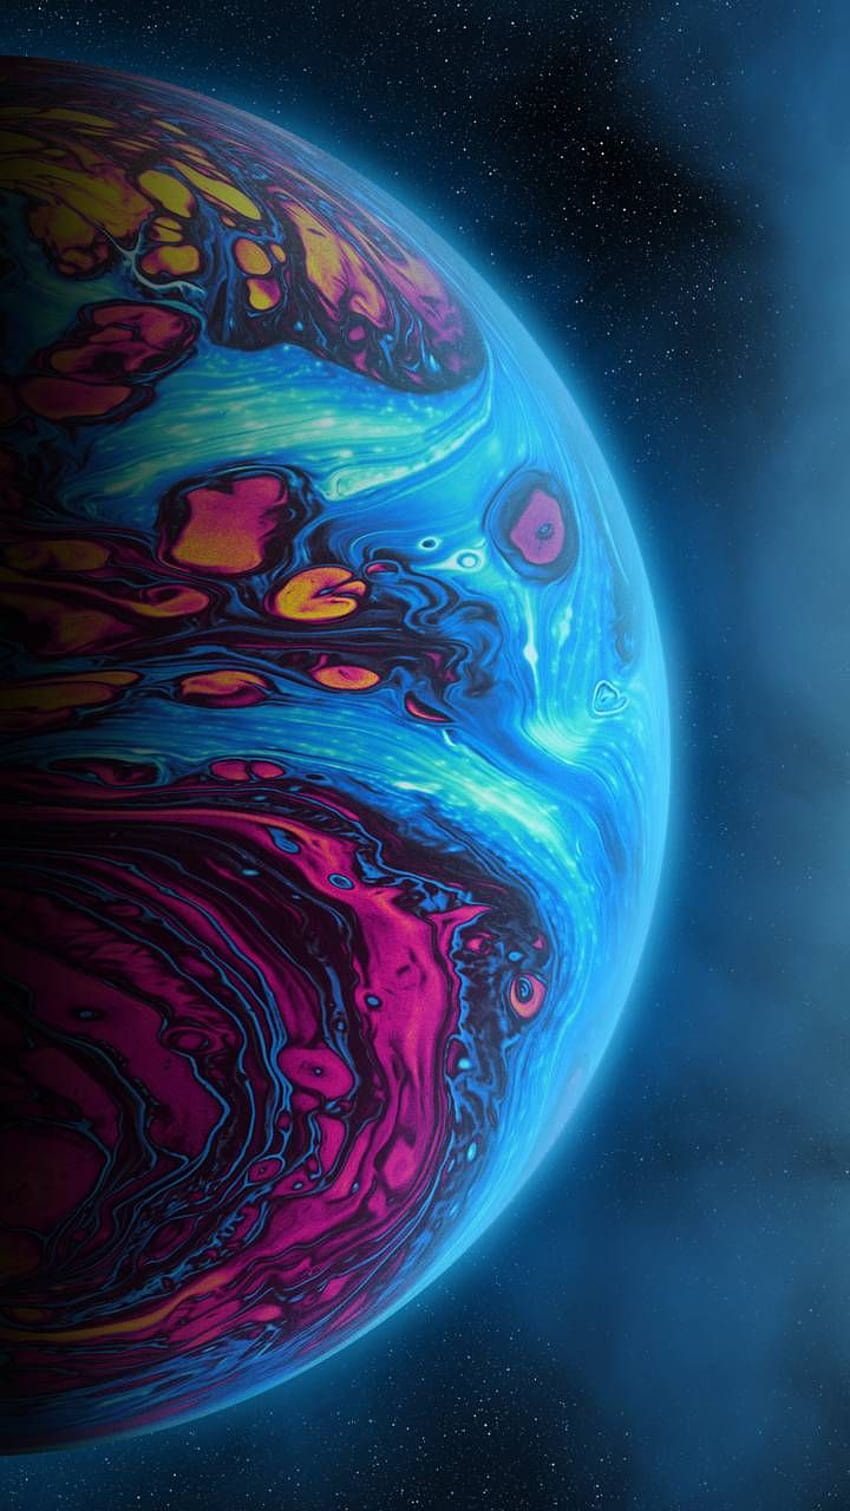 Planet por Geoglyser - ae ahora. Explore millones de paredes fluidas populares en 2021. Planetas, galaxia genial, neón, espacio exterior de neón fondo de pantalla del teléfono